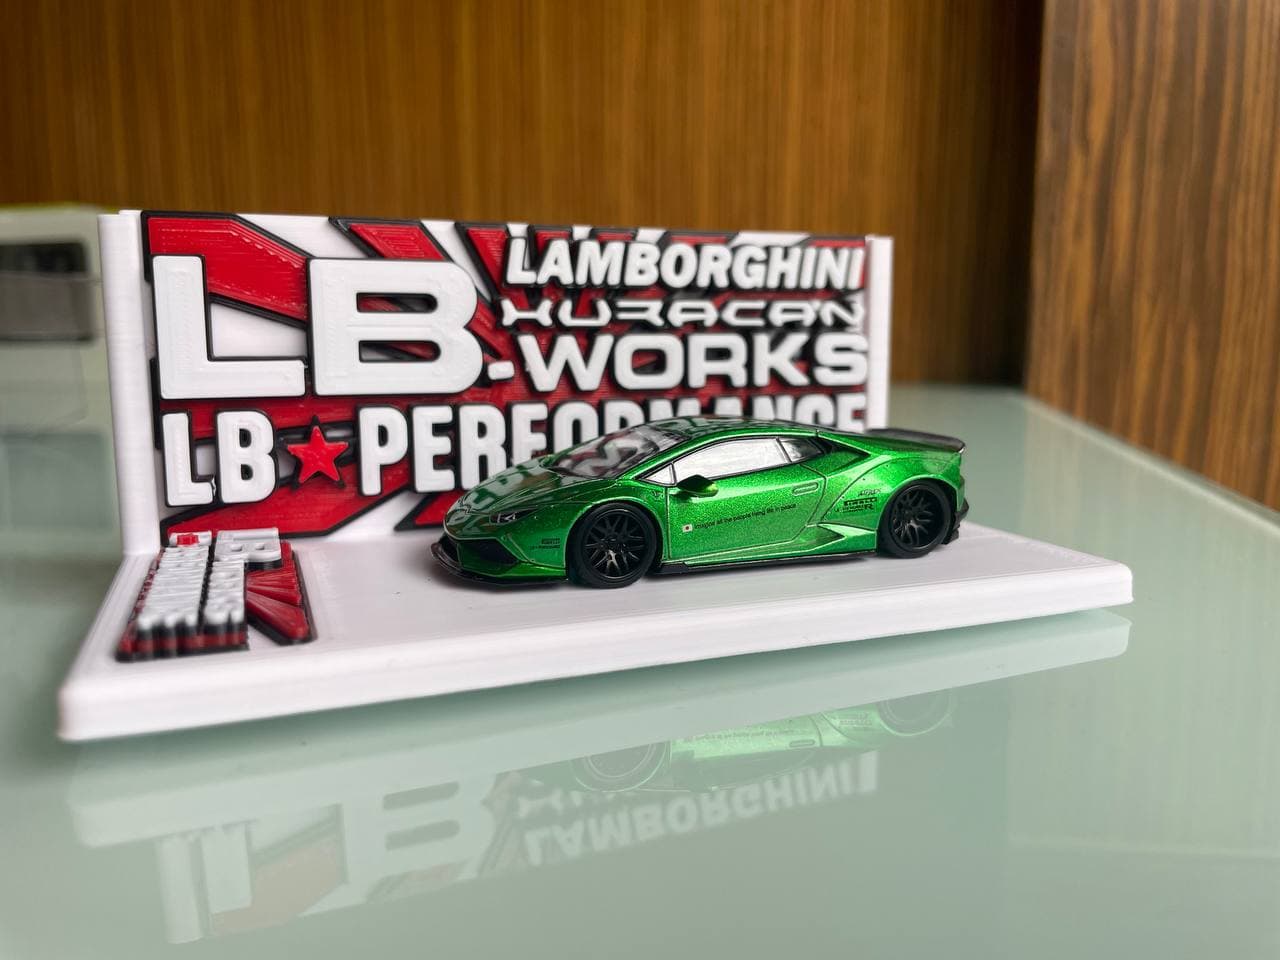 Mini GT LB Lamborghini Huracan Display Base by GigaPenguin | Download ...